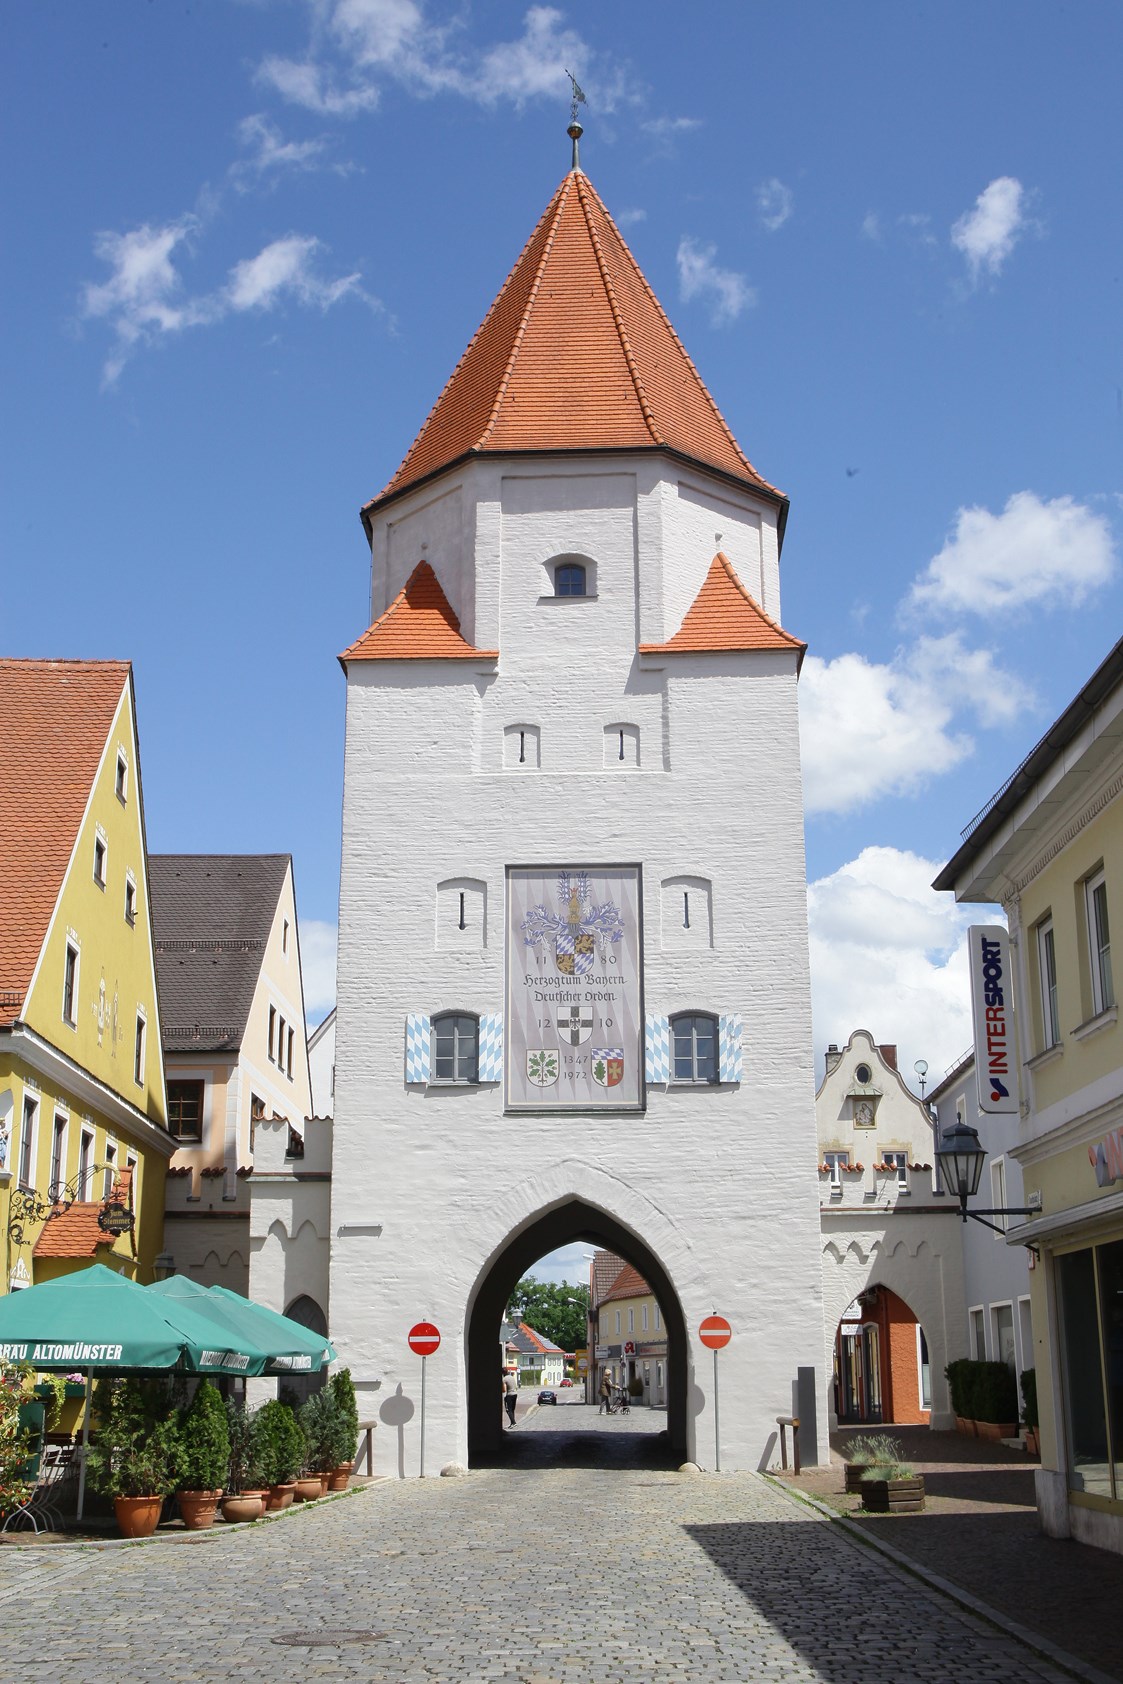 Ausflugsziel: Im Unterem Tor, einem der beiden imposanten Stadttore Aichachs, ist das "Wittelsbacher Museum" untergebracht. - Wittelsbachermuseum